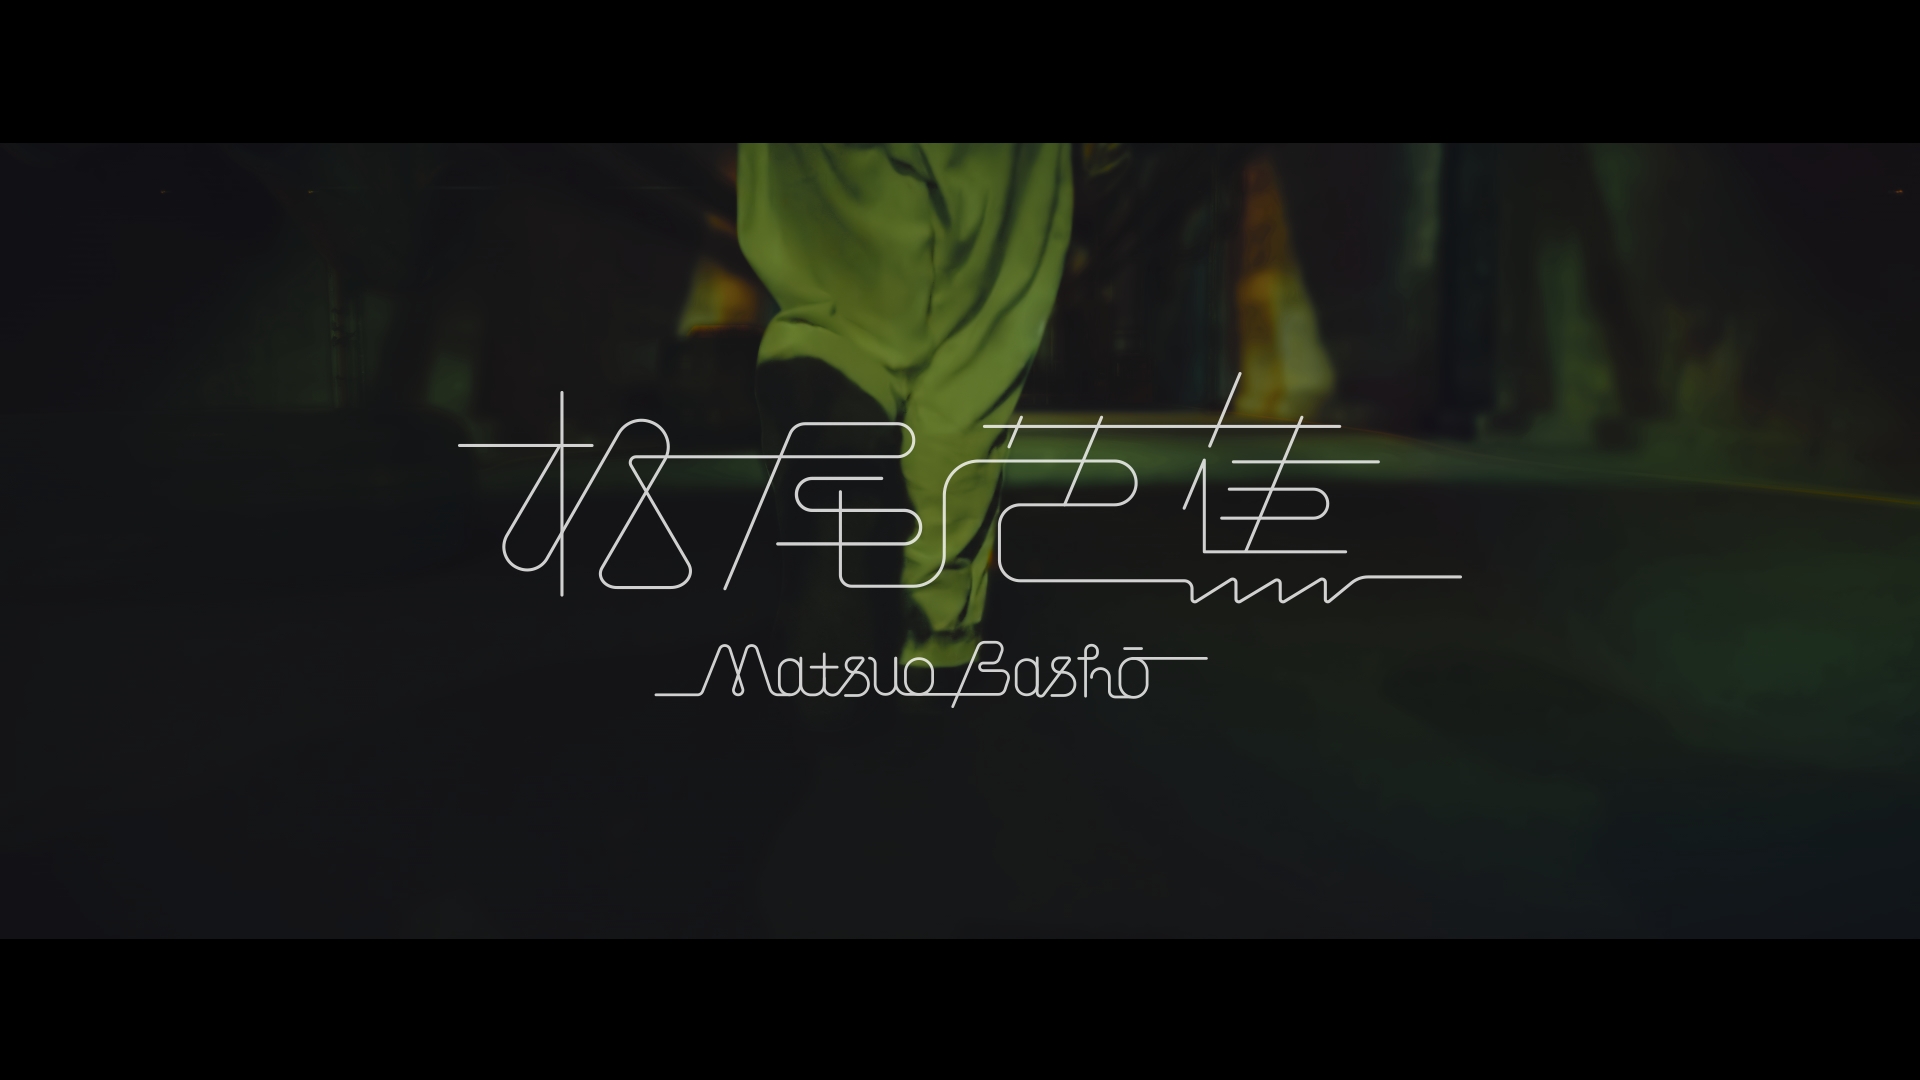 水曜日のカンパネラ、プリウスとコラボ！試乗から生まれた“松尾芭蕉”MV公開 #カンパネラが歌うプリウス #水曜日のプリウス cut_01